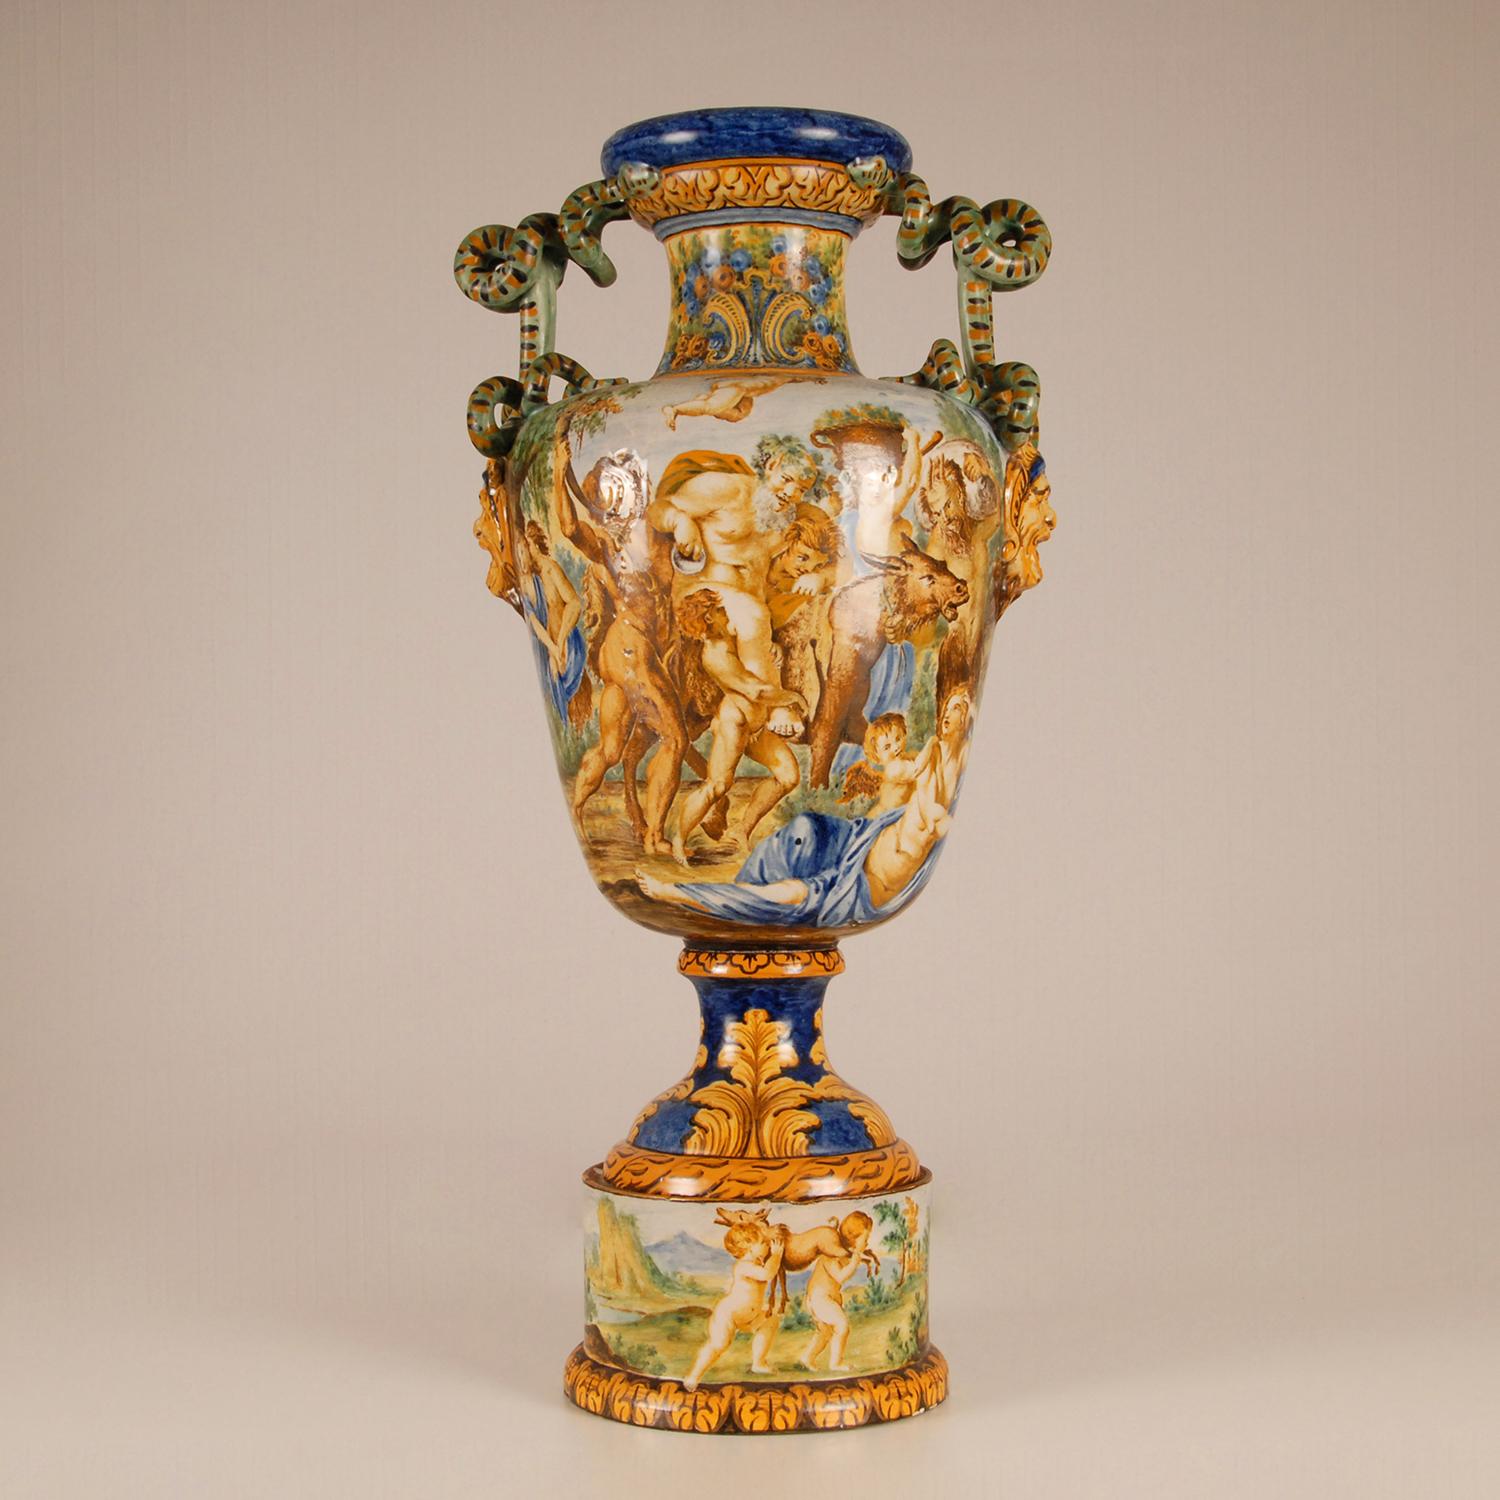 Grand vase italien en majolique à anses serpentines avec une scène mythologique
Représentation du triomphe de Bacchus et Ariane - Annibale Carracci - 1597 - Galerie Farnèse, Rome
Une partie de la fresque du plafond 